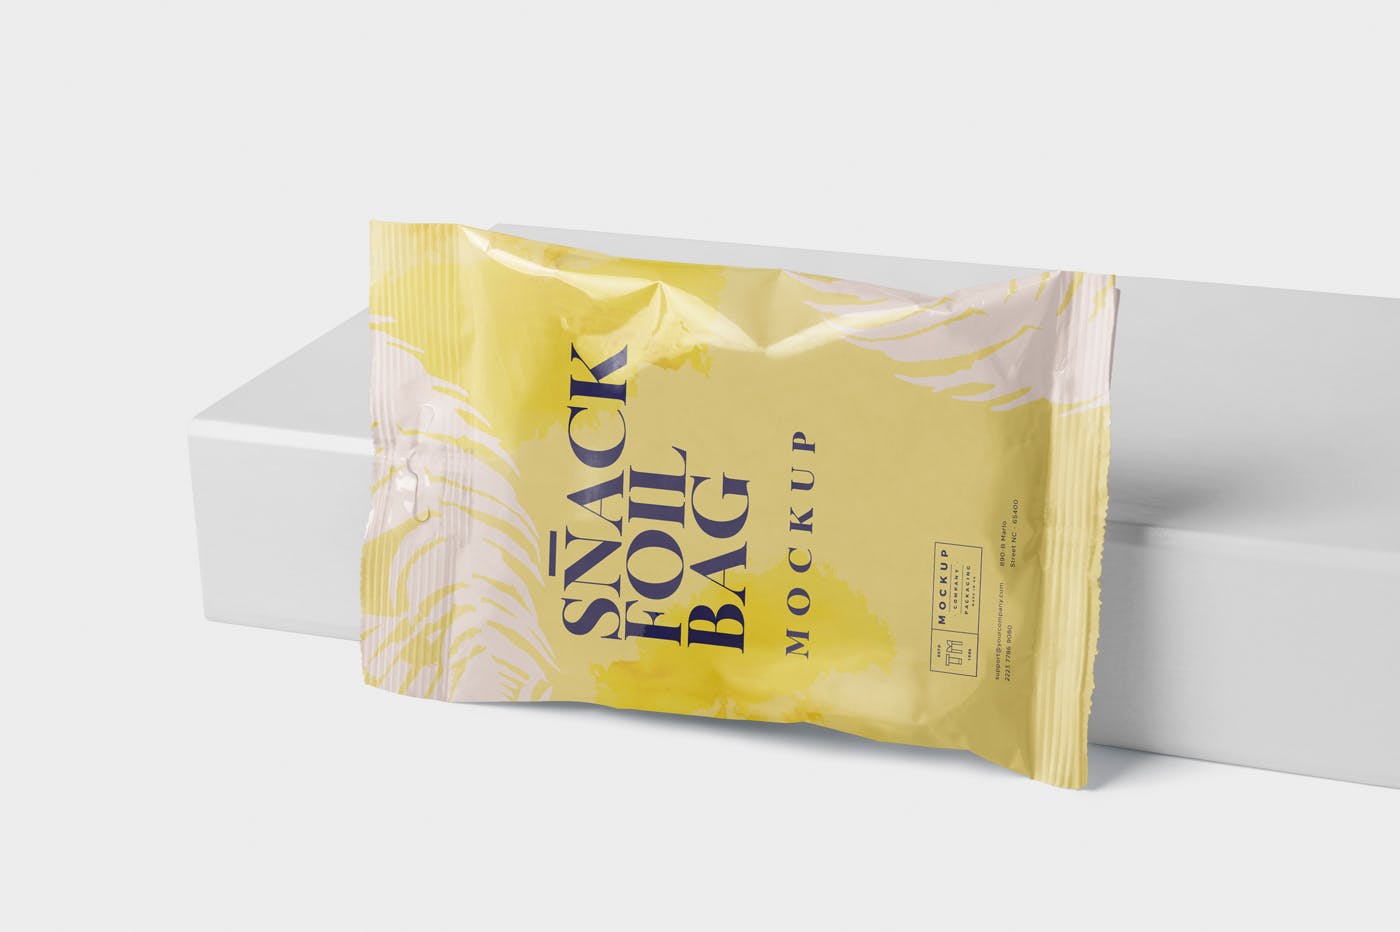 小吃零食铝箔包装袋设计样机模板 Snack Foil Bag Mockup – Slim Size插图(3)